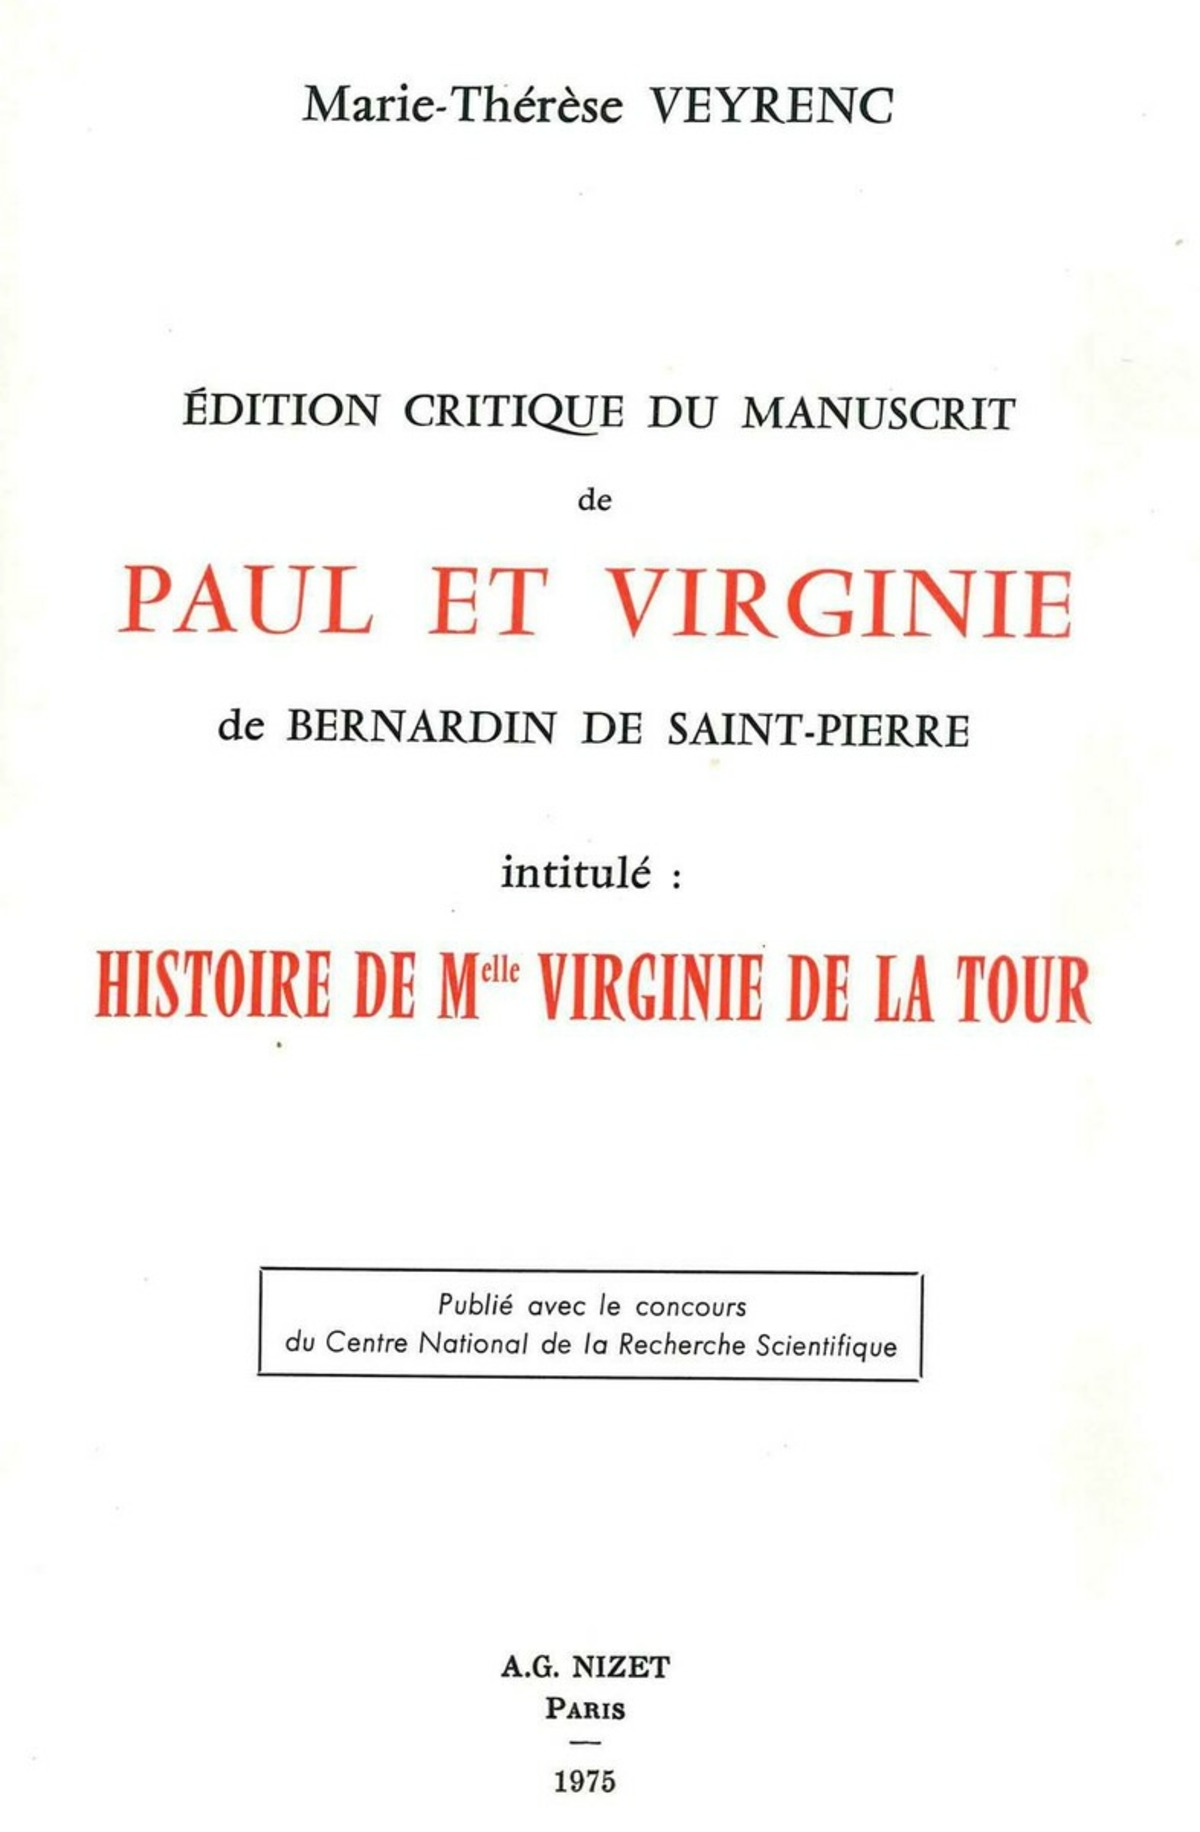 Édition critique du manuscrit de Paul et Virginie de Bernardin de Saint-Pierre intitulé: "Histoire de Mlle Virginie de la Tour."